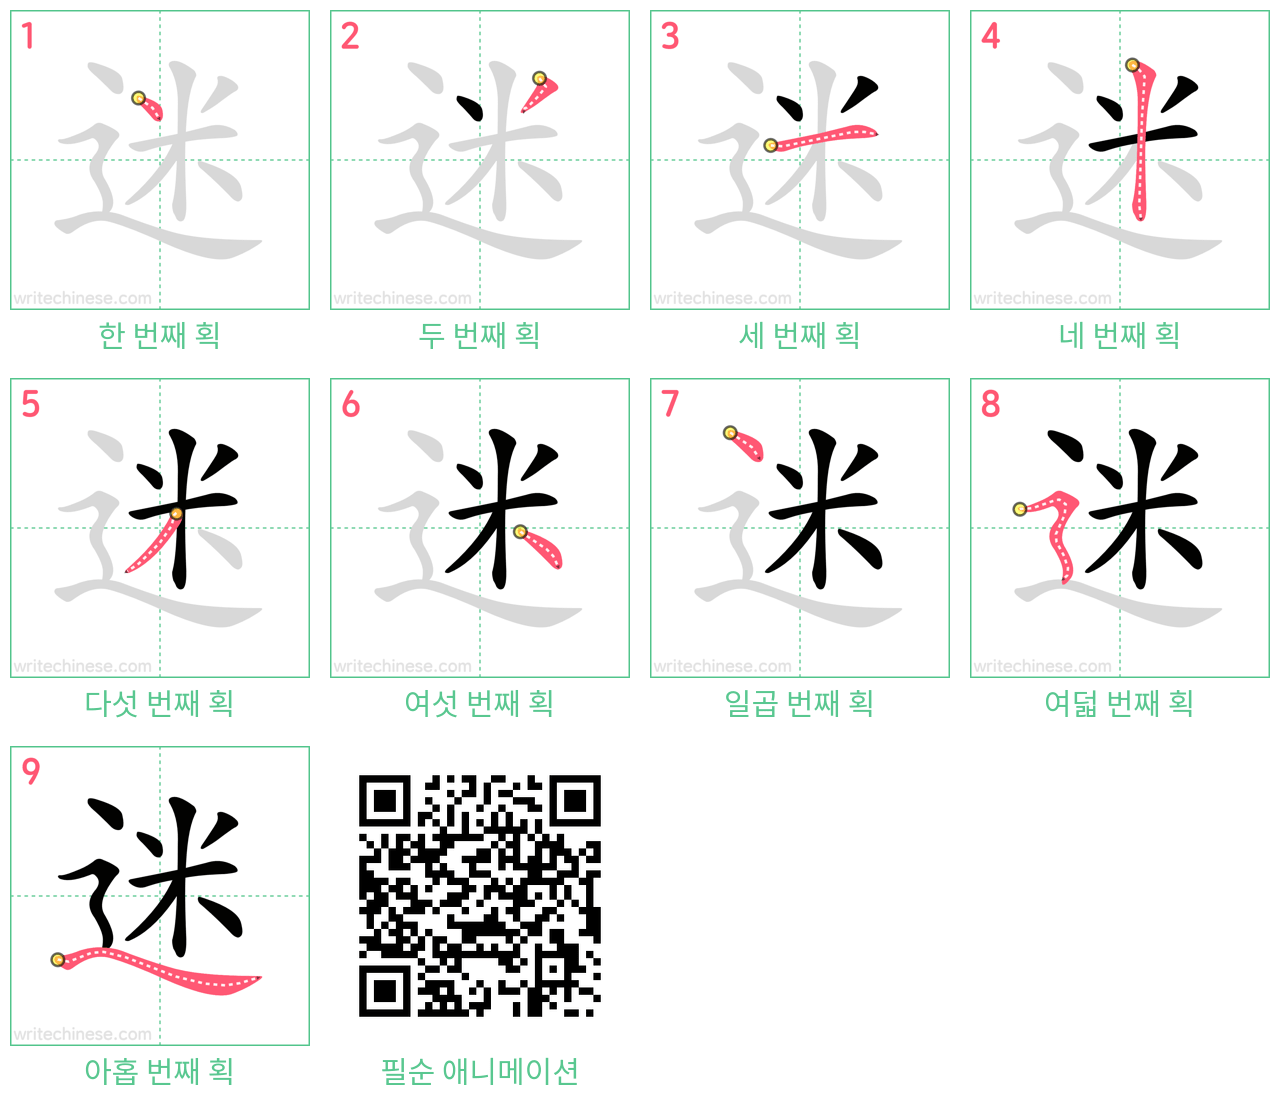 迷 step-by-step stroke order diagrams